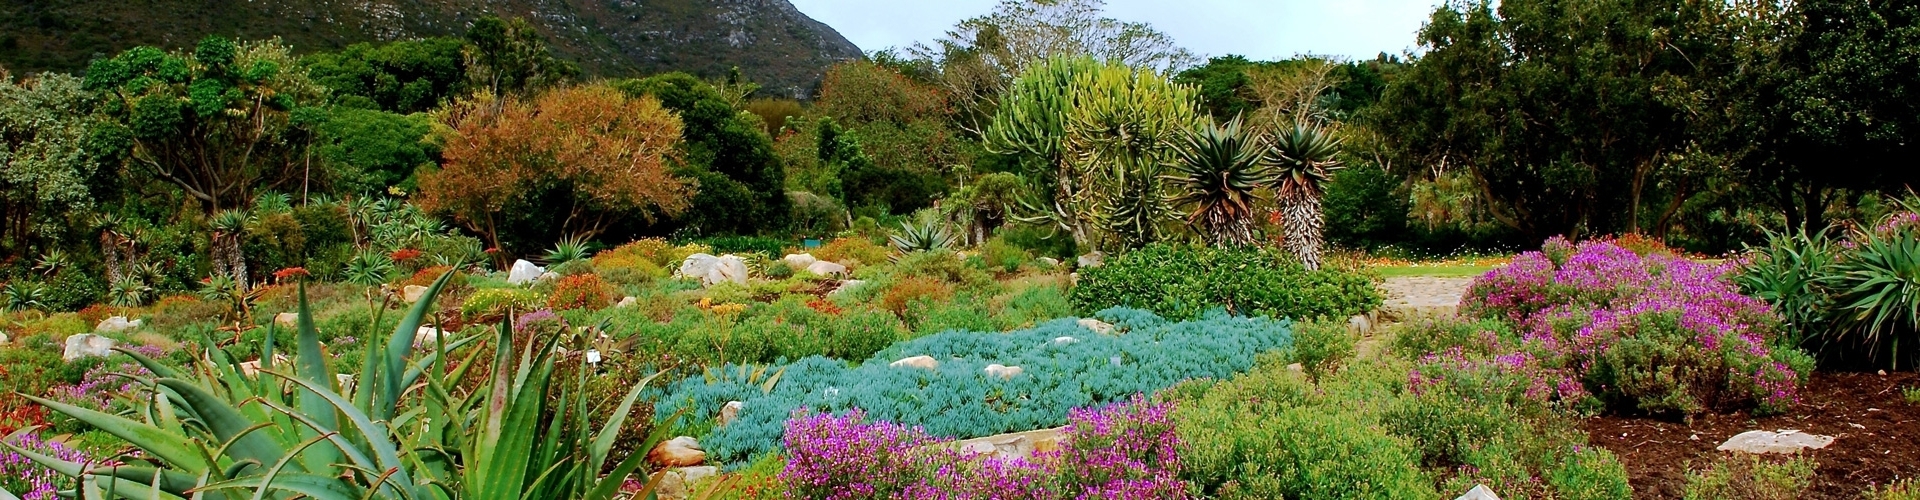 kirstenbosch gardens in zuid afrika botanical garden